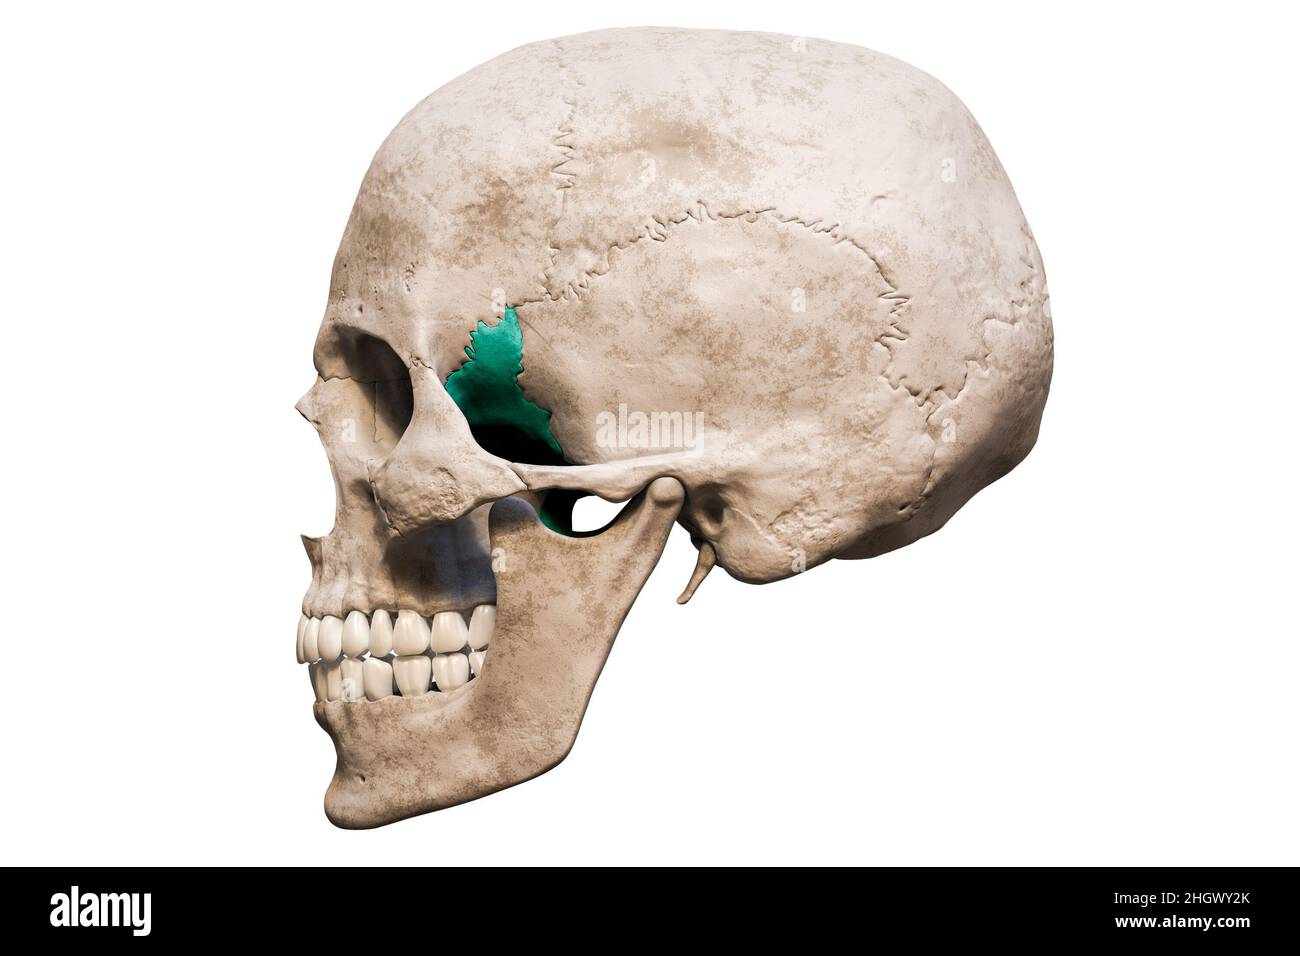 Cranio umano maschile anatomicamente preciso con vista laterale o profilo dell'osso sphenoide colorato isolato su sfondo bianco con rendering dello spazio di copia 3D Foto Stock